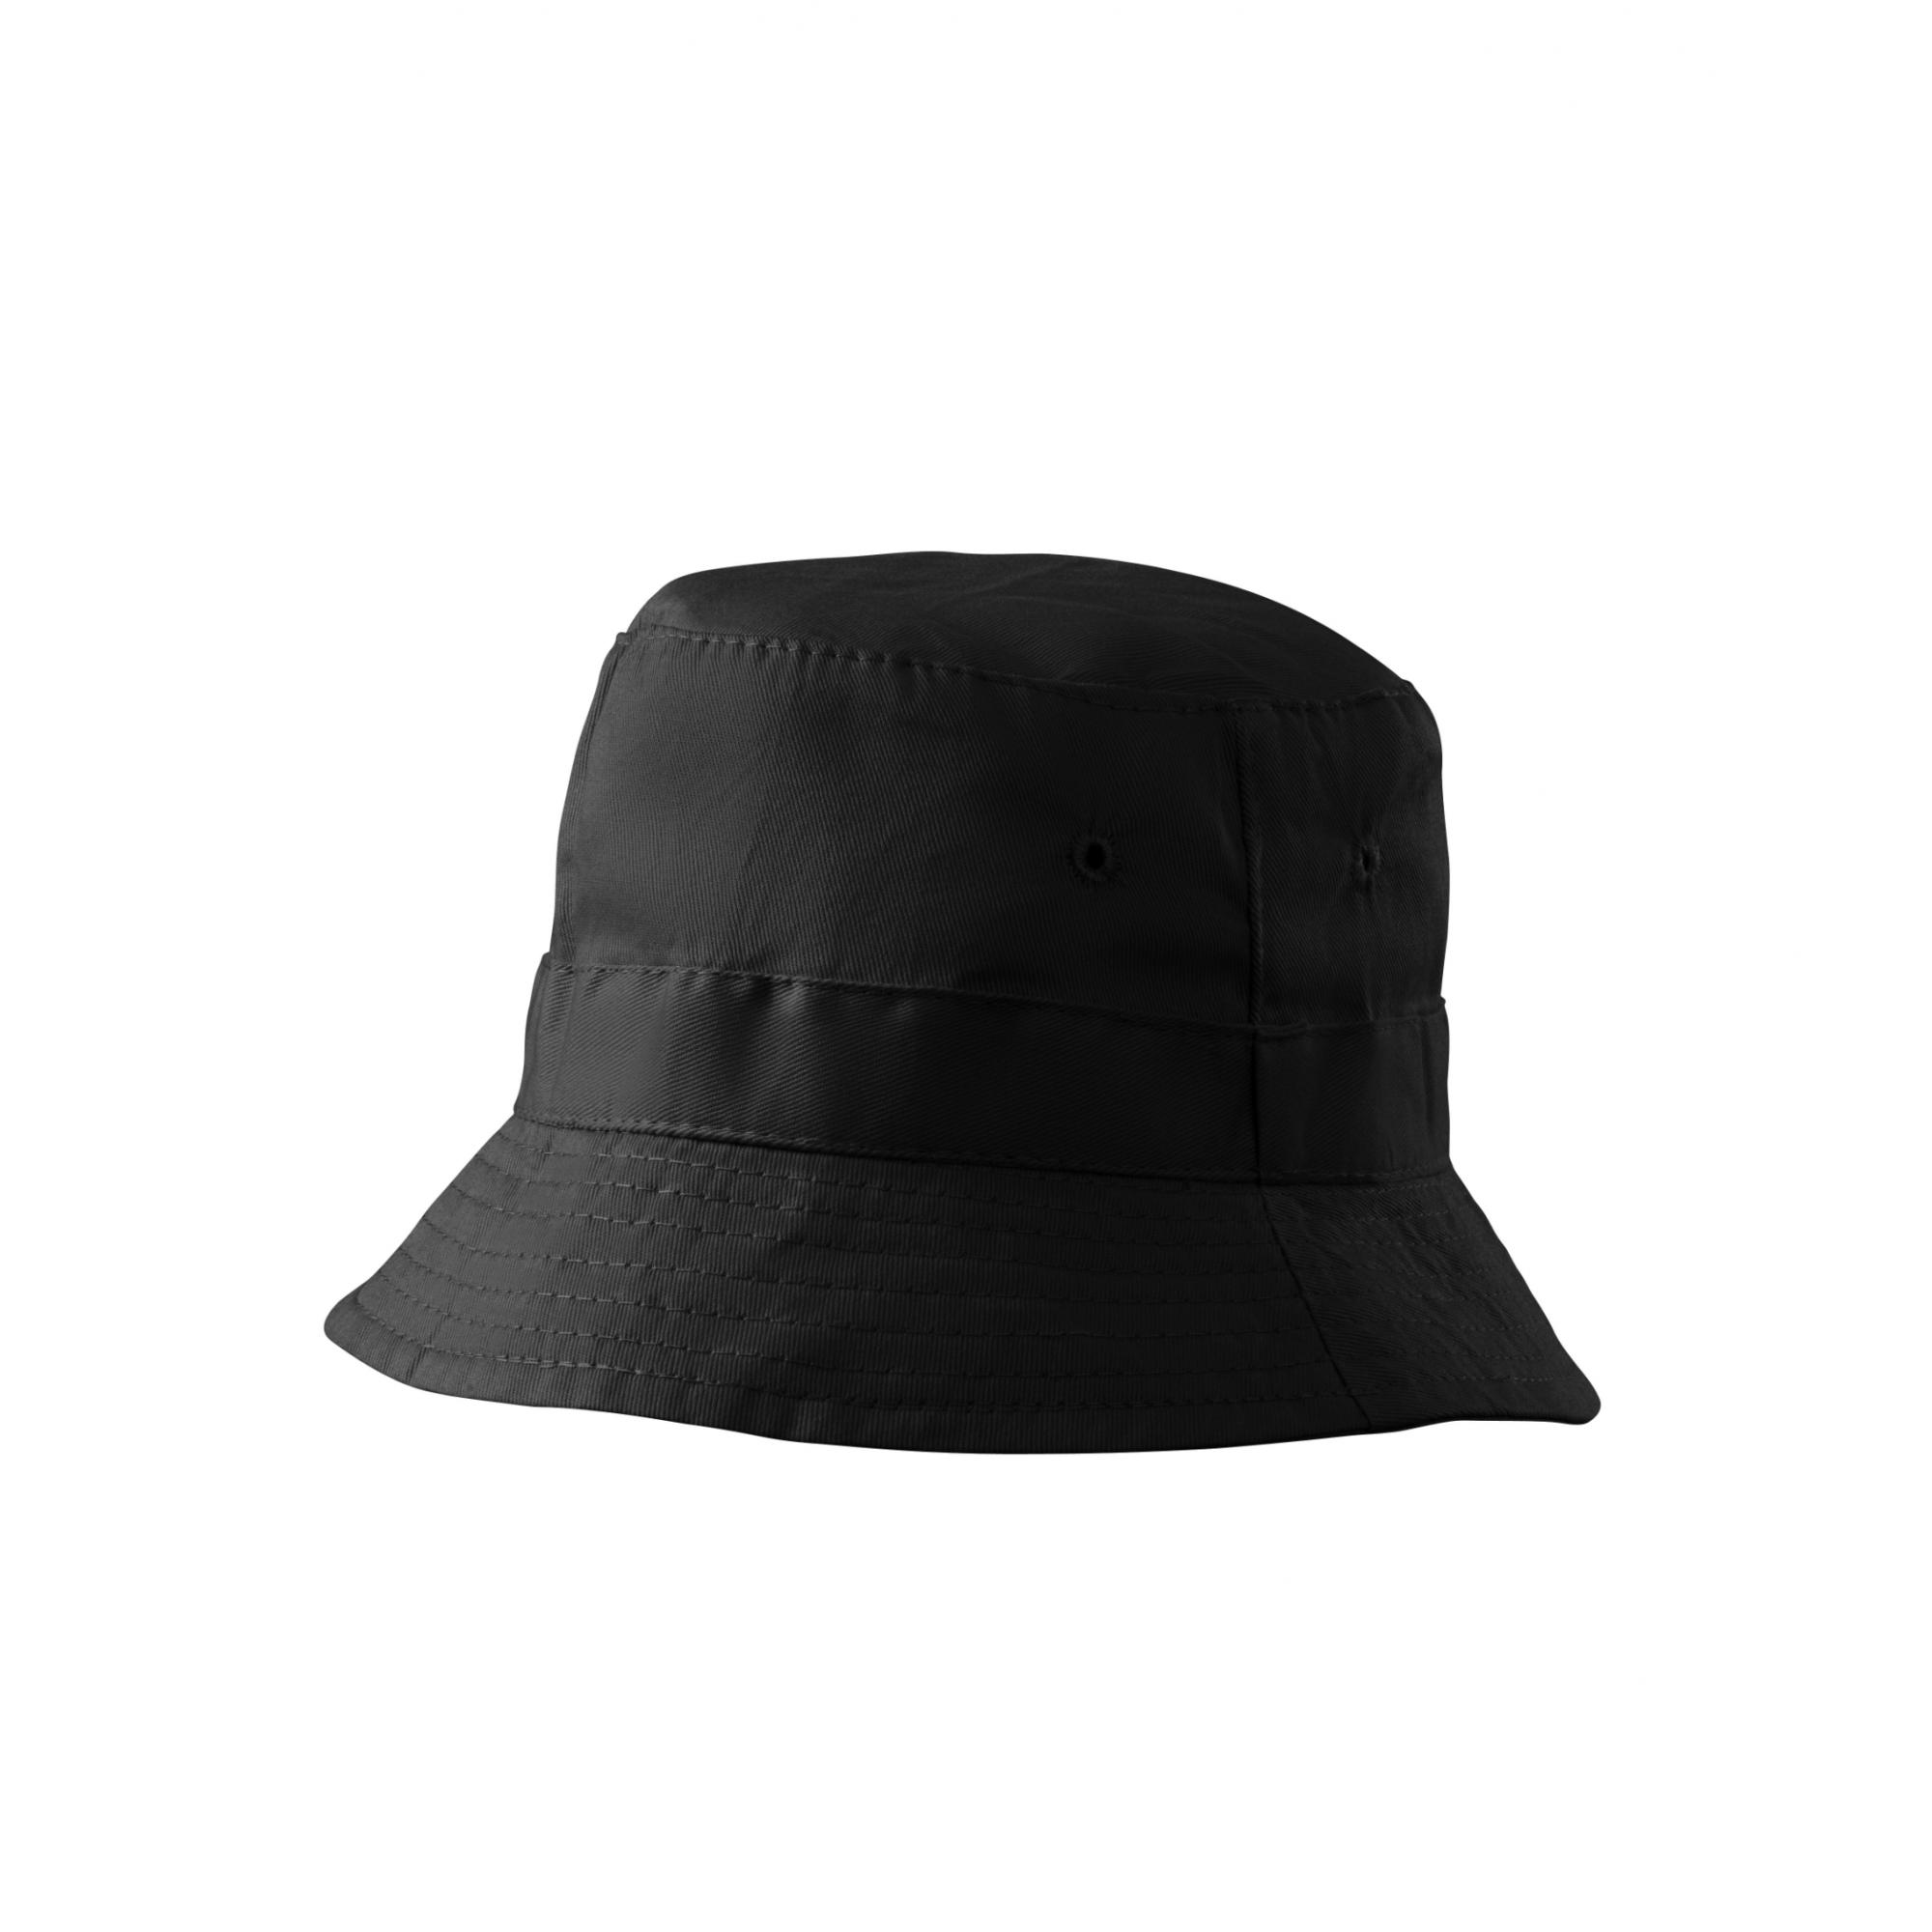 Pălărie unisex Classic 304 Negru Marime universala